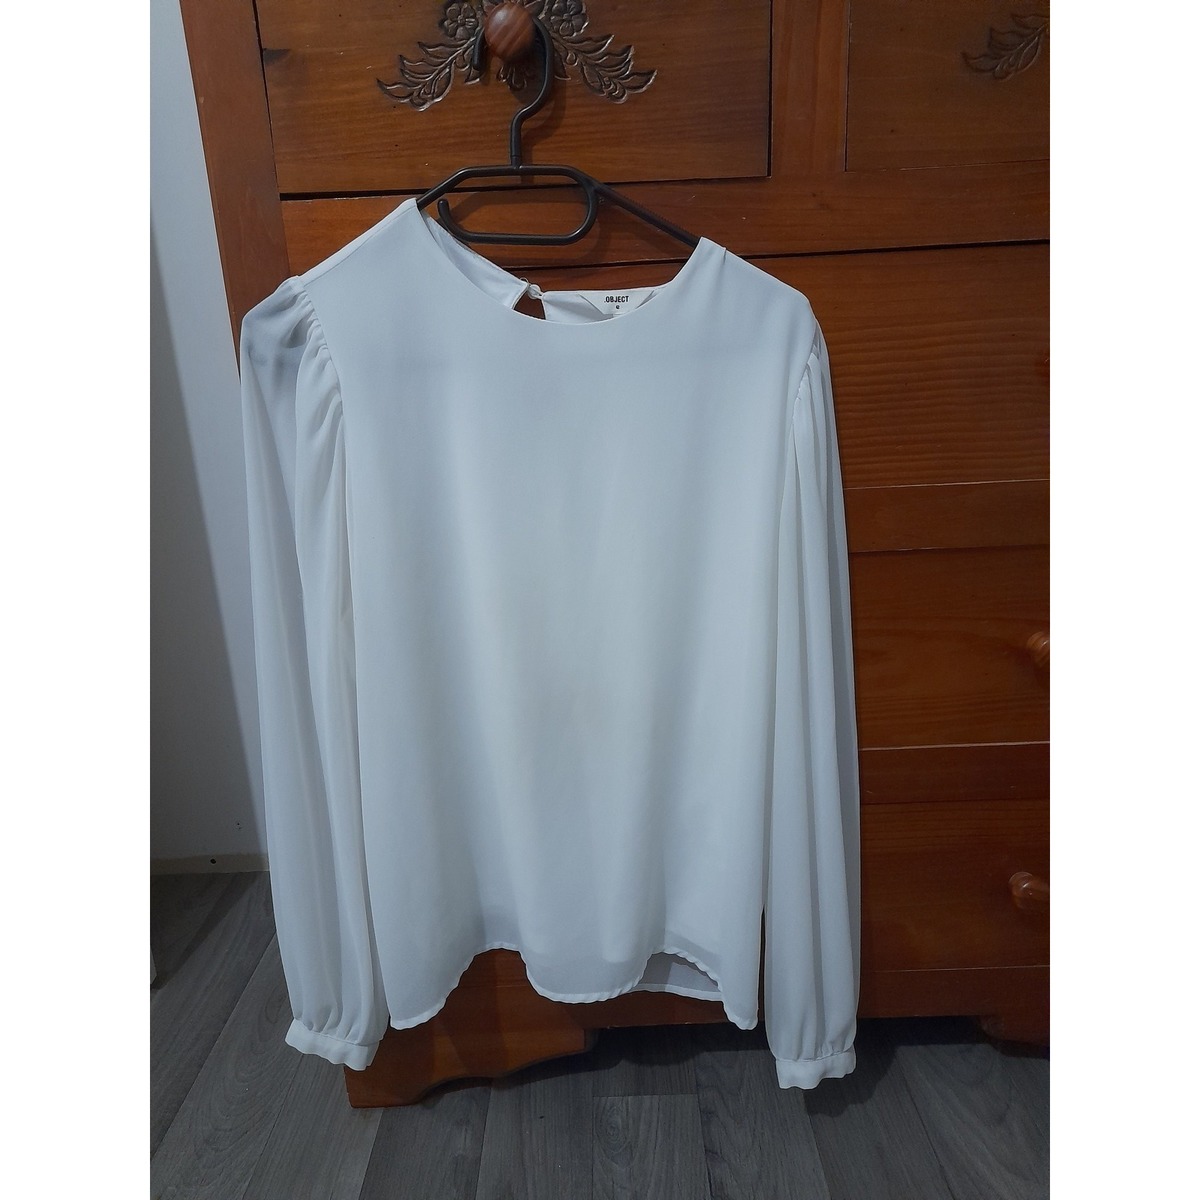 Vêtements Femme Tops / Blouses Object Blouse Blanc